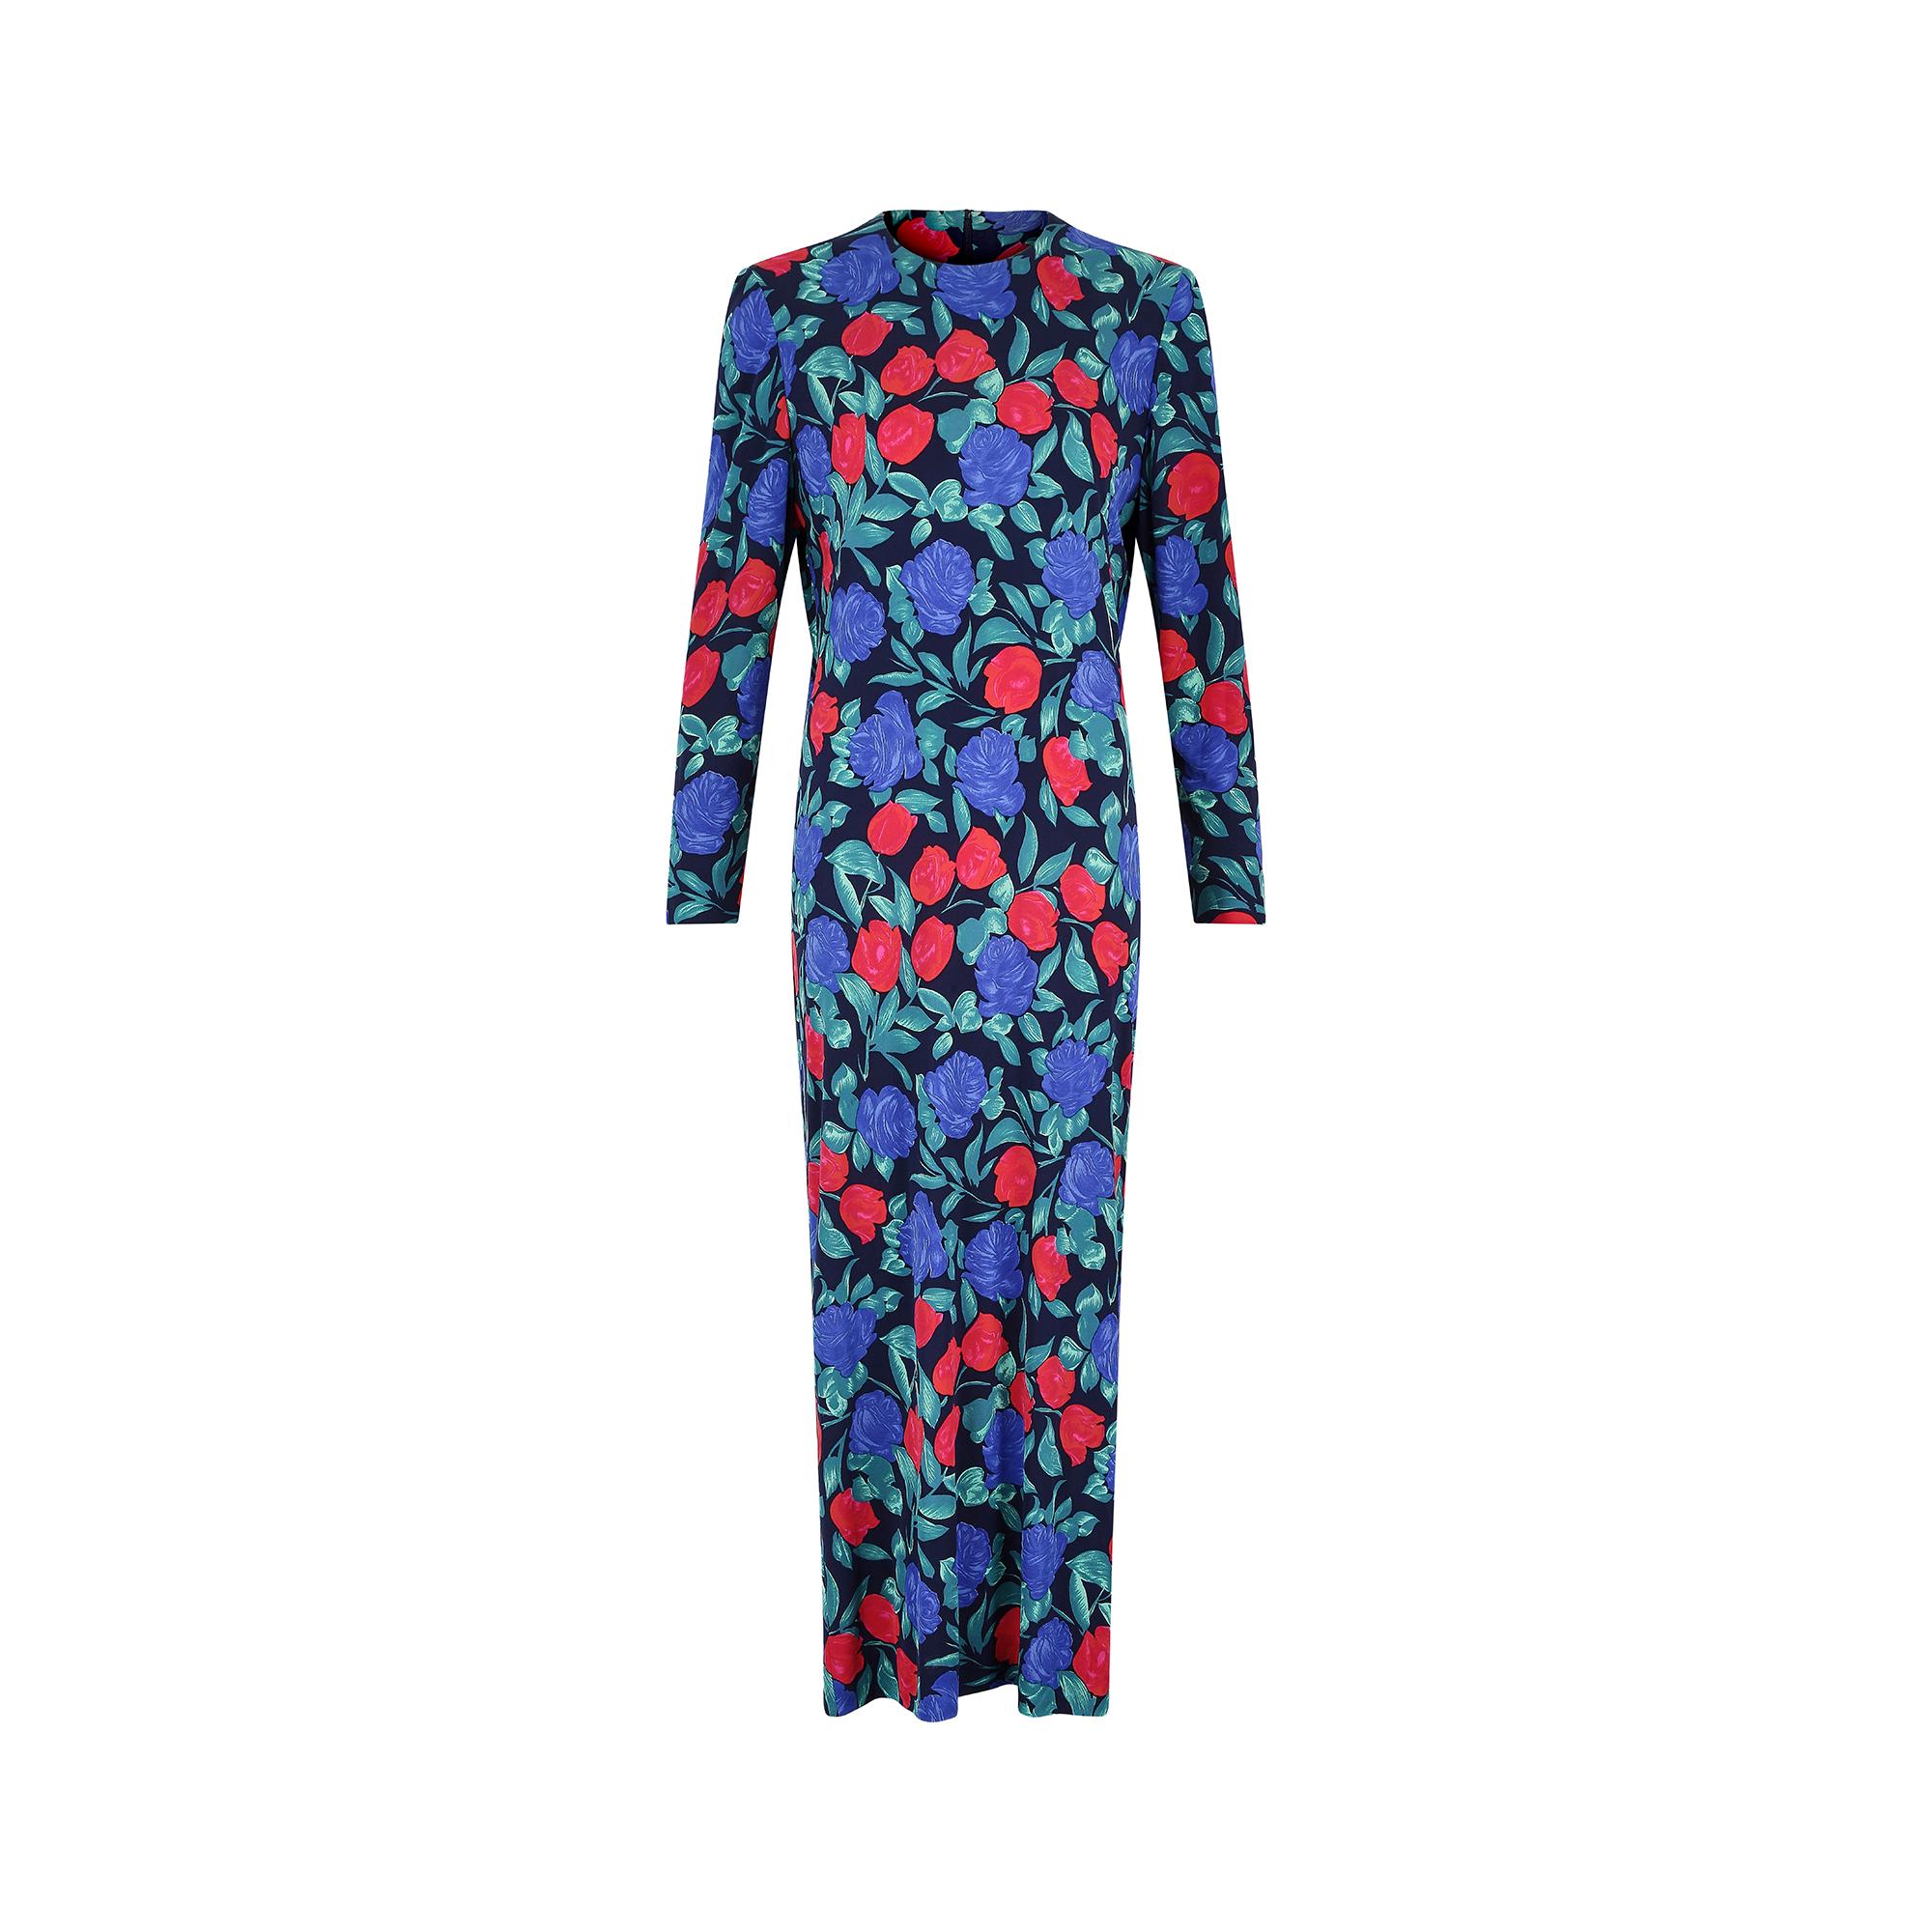 Dieses Maxikleid aus französischem Couture-Seidenjersey aus den späten 1970er bis frühen 1980er Jahren hat ein wunderschönes blaues und rotes Rosenmuster auf einem dunkelblauen Hintergrund. Es hat einen hohen, runden Ausschnitt und ist in einer